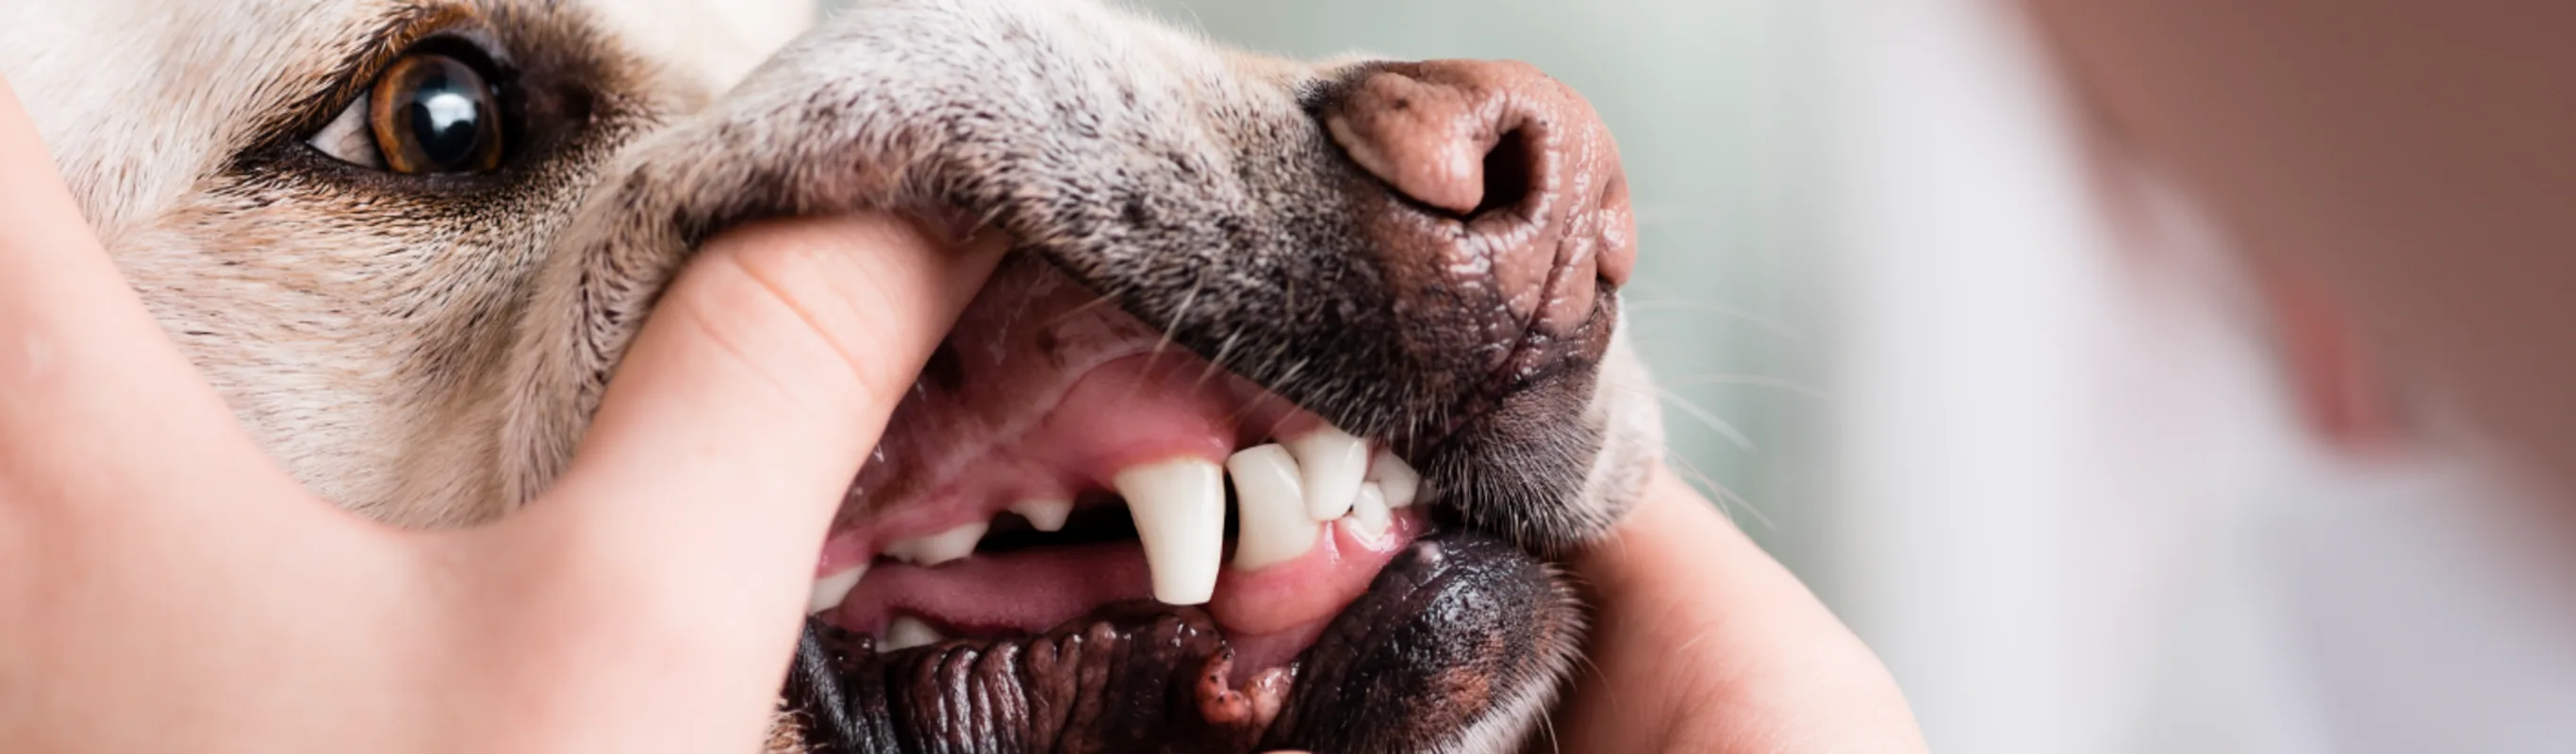 Dog getting teeth examined 